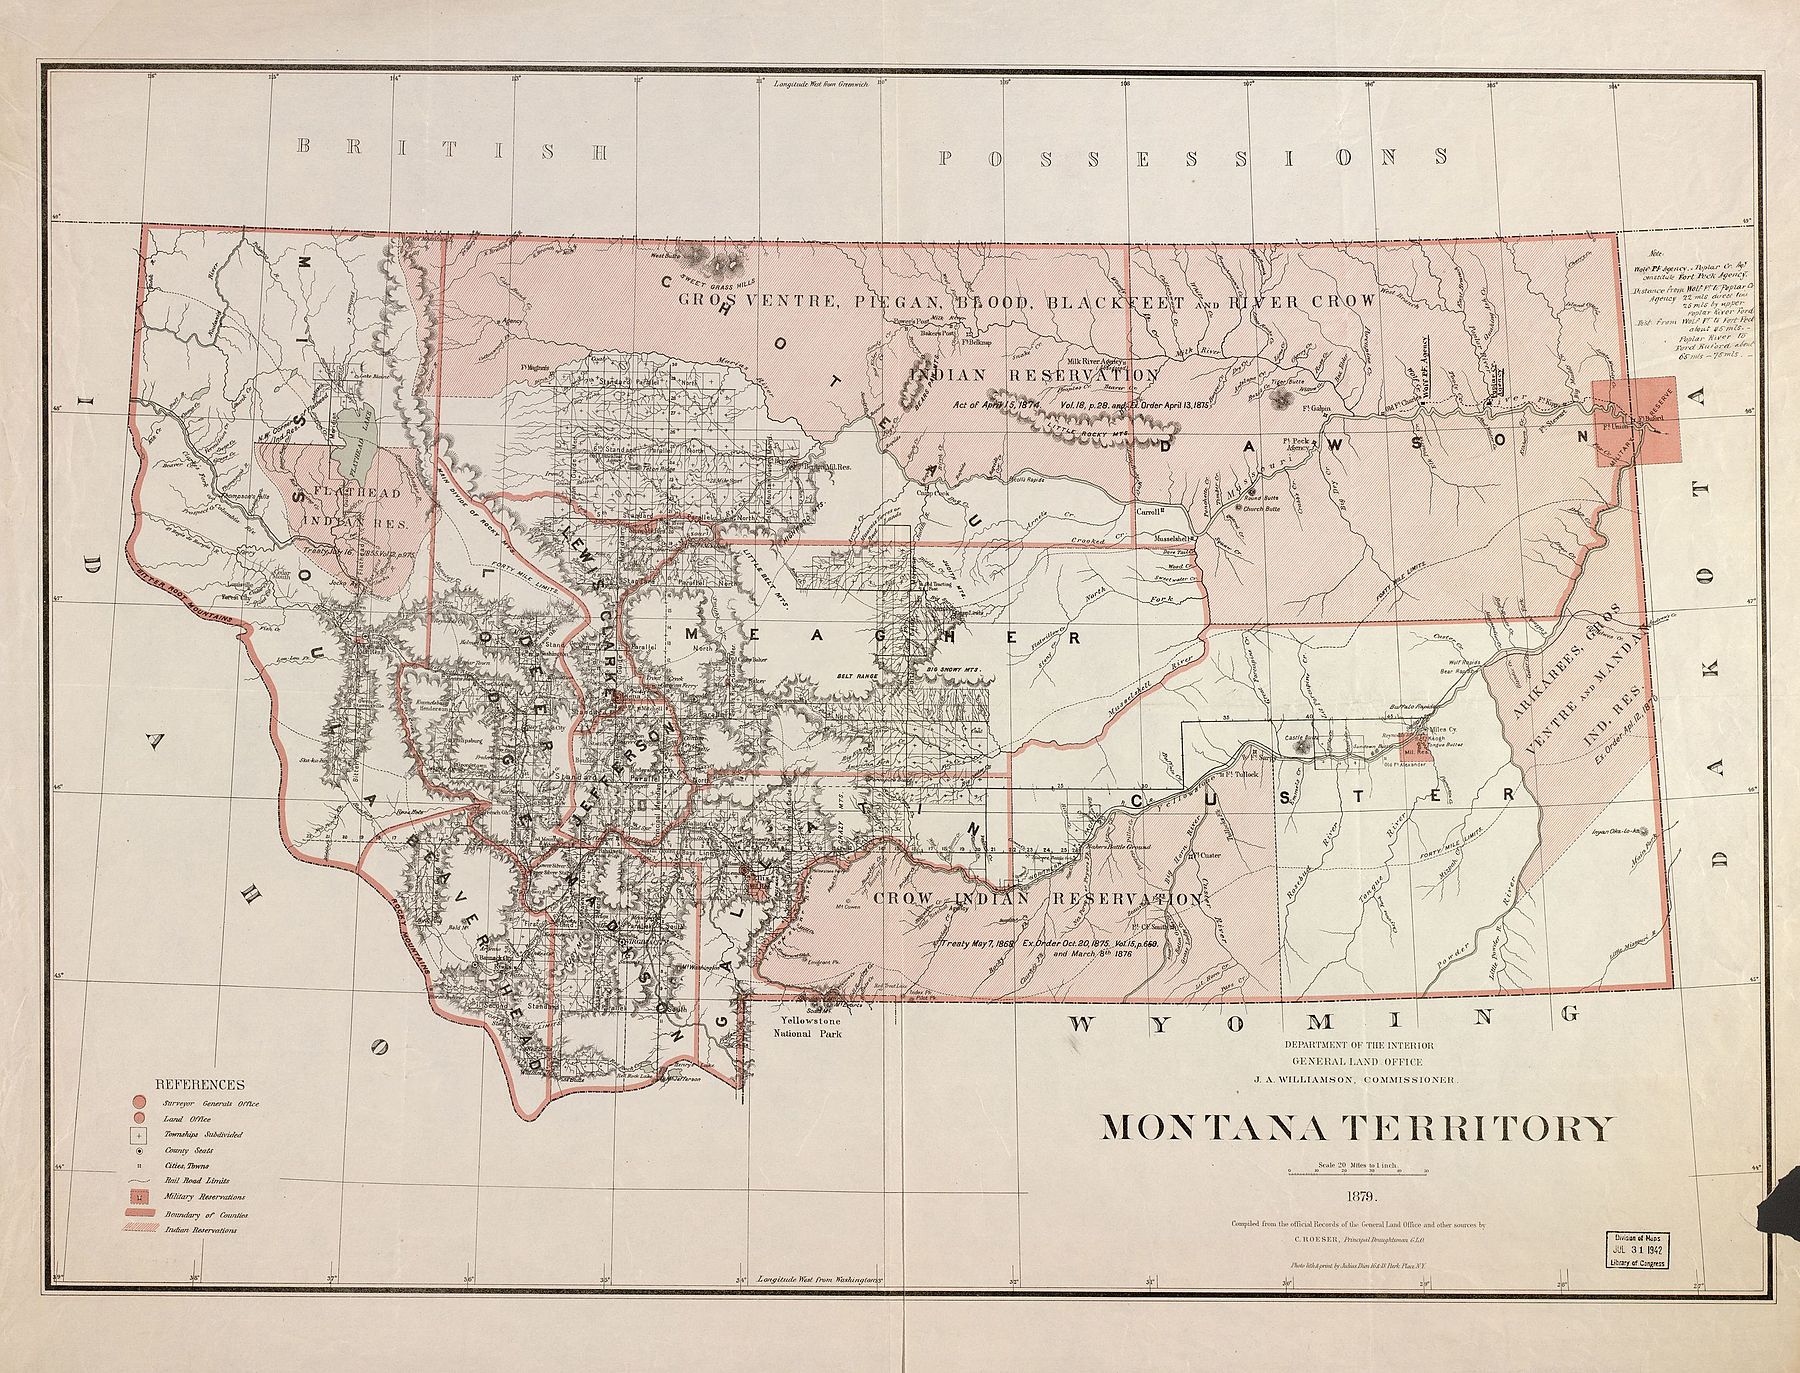 Вуд-младший служил в Вулф-Пойнт и Поплар-Крик на северо-востоке территории Монтана с 1880 по 1889 год. В 1878 году Индейское агентство Форт-Пек было перемещено из того места, которое показано на карте, в его нынешнее местоположение в Попларе, потому что первоначальное агентство был расположен в пойме реки, каждую весну страдая от наводнений в верховьях реки Миссури.